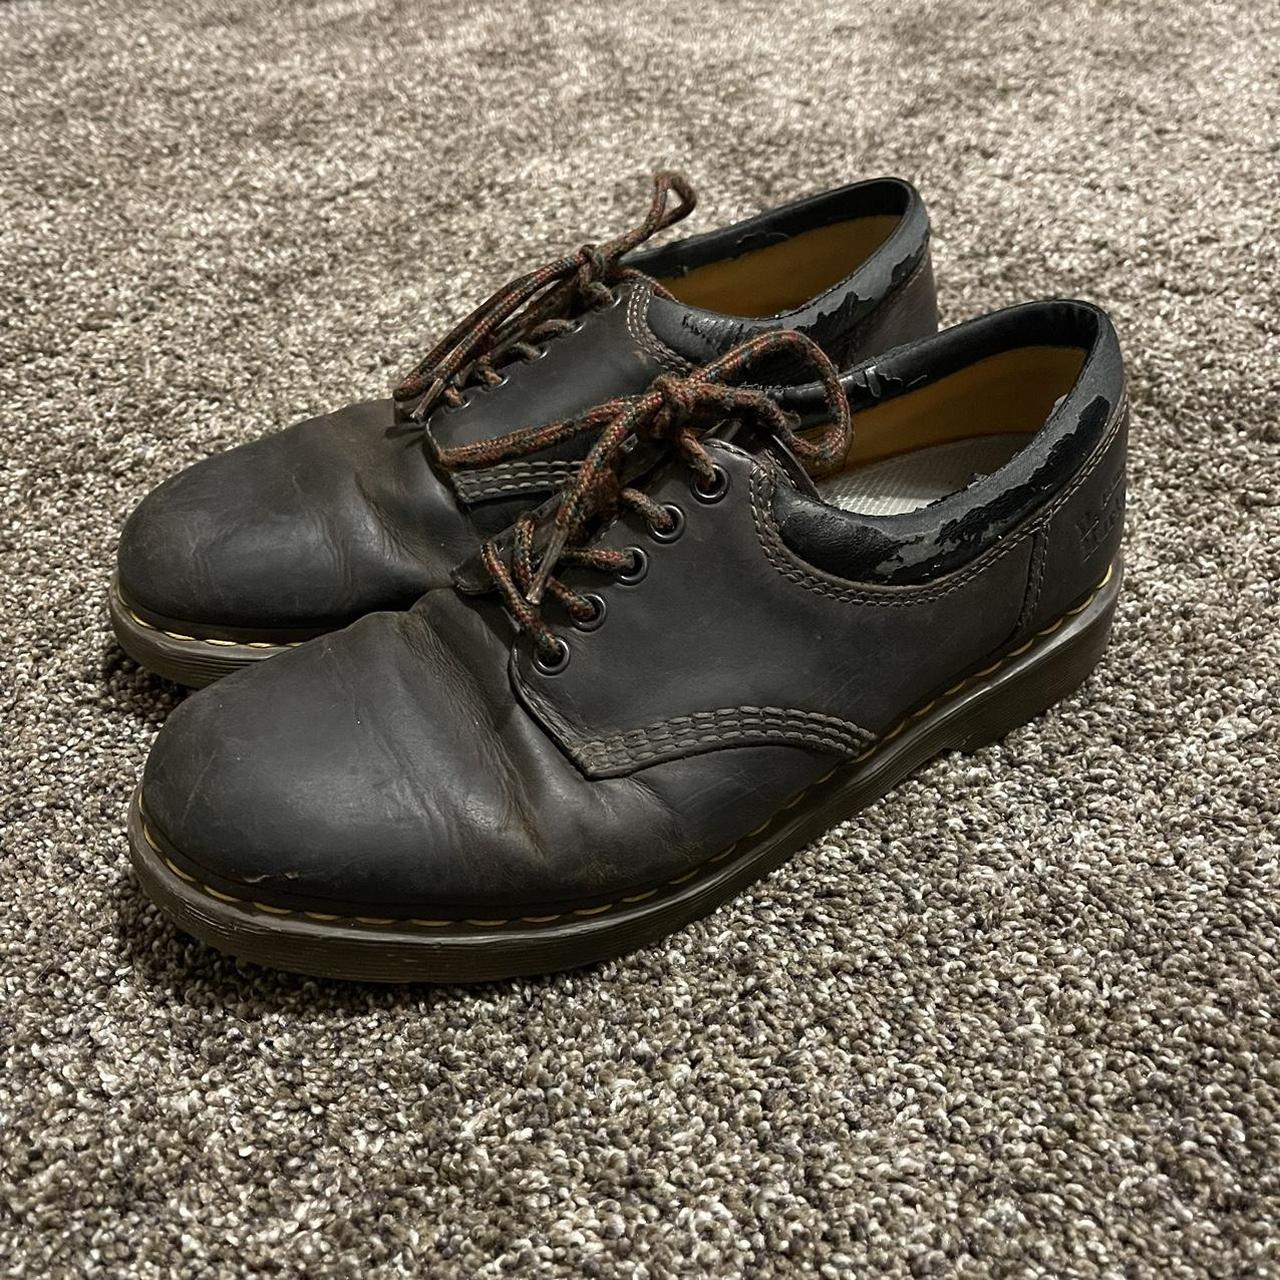 Dr. Marten Boots 8053 Shoe Size 11.5... - Depop